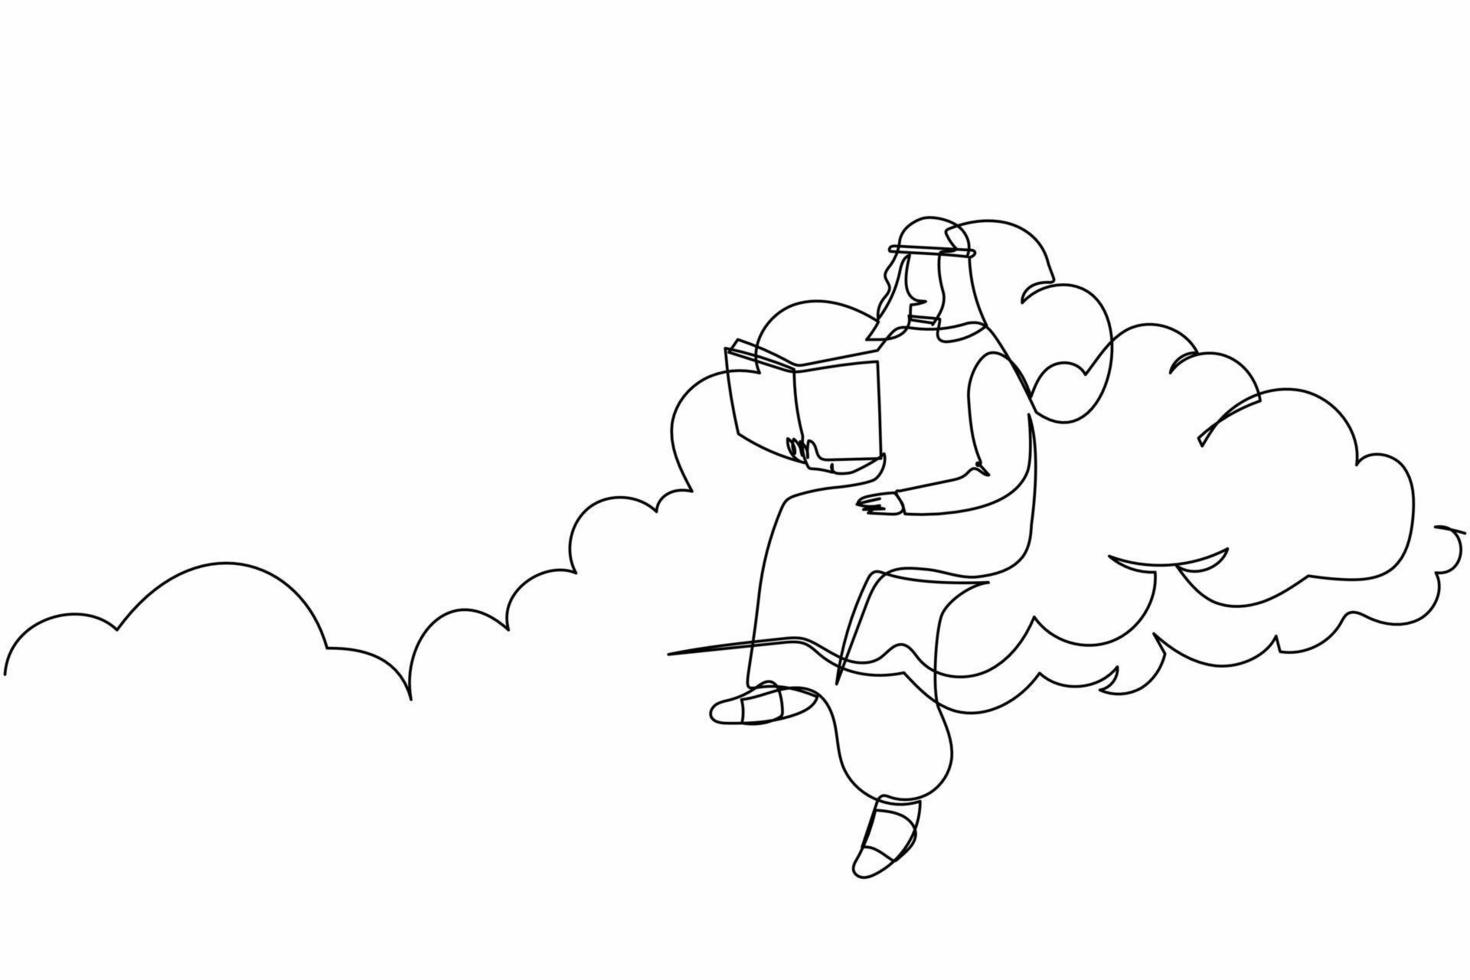 fortlaufende einzeilige zeichnung arabischer geschäftsmann, der auf einem wolkenlesebuch sitzt. Ausbildung zur Verfolgung des Karrierepfadwachstums. Büroangestellte studieren Literatur. einzeiliges zeichnen design vektorgrafik illustration vektor